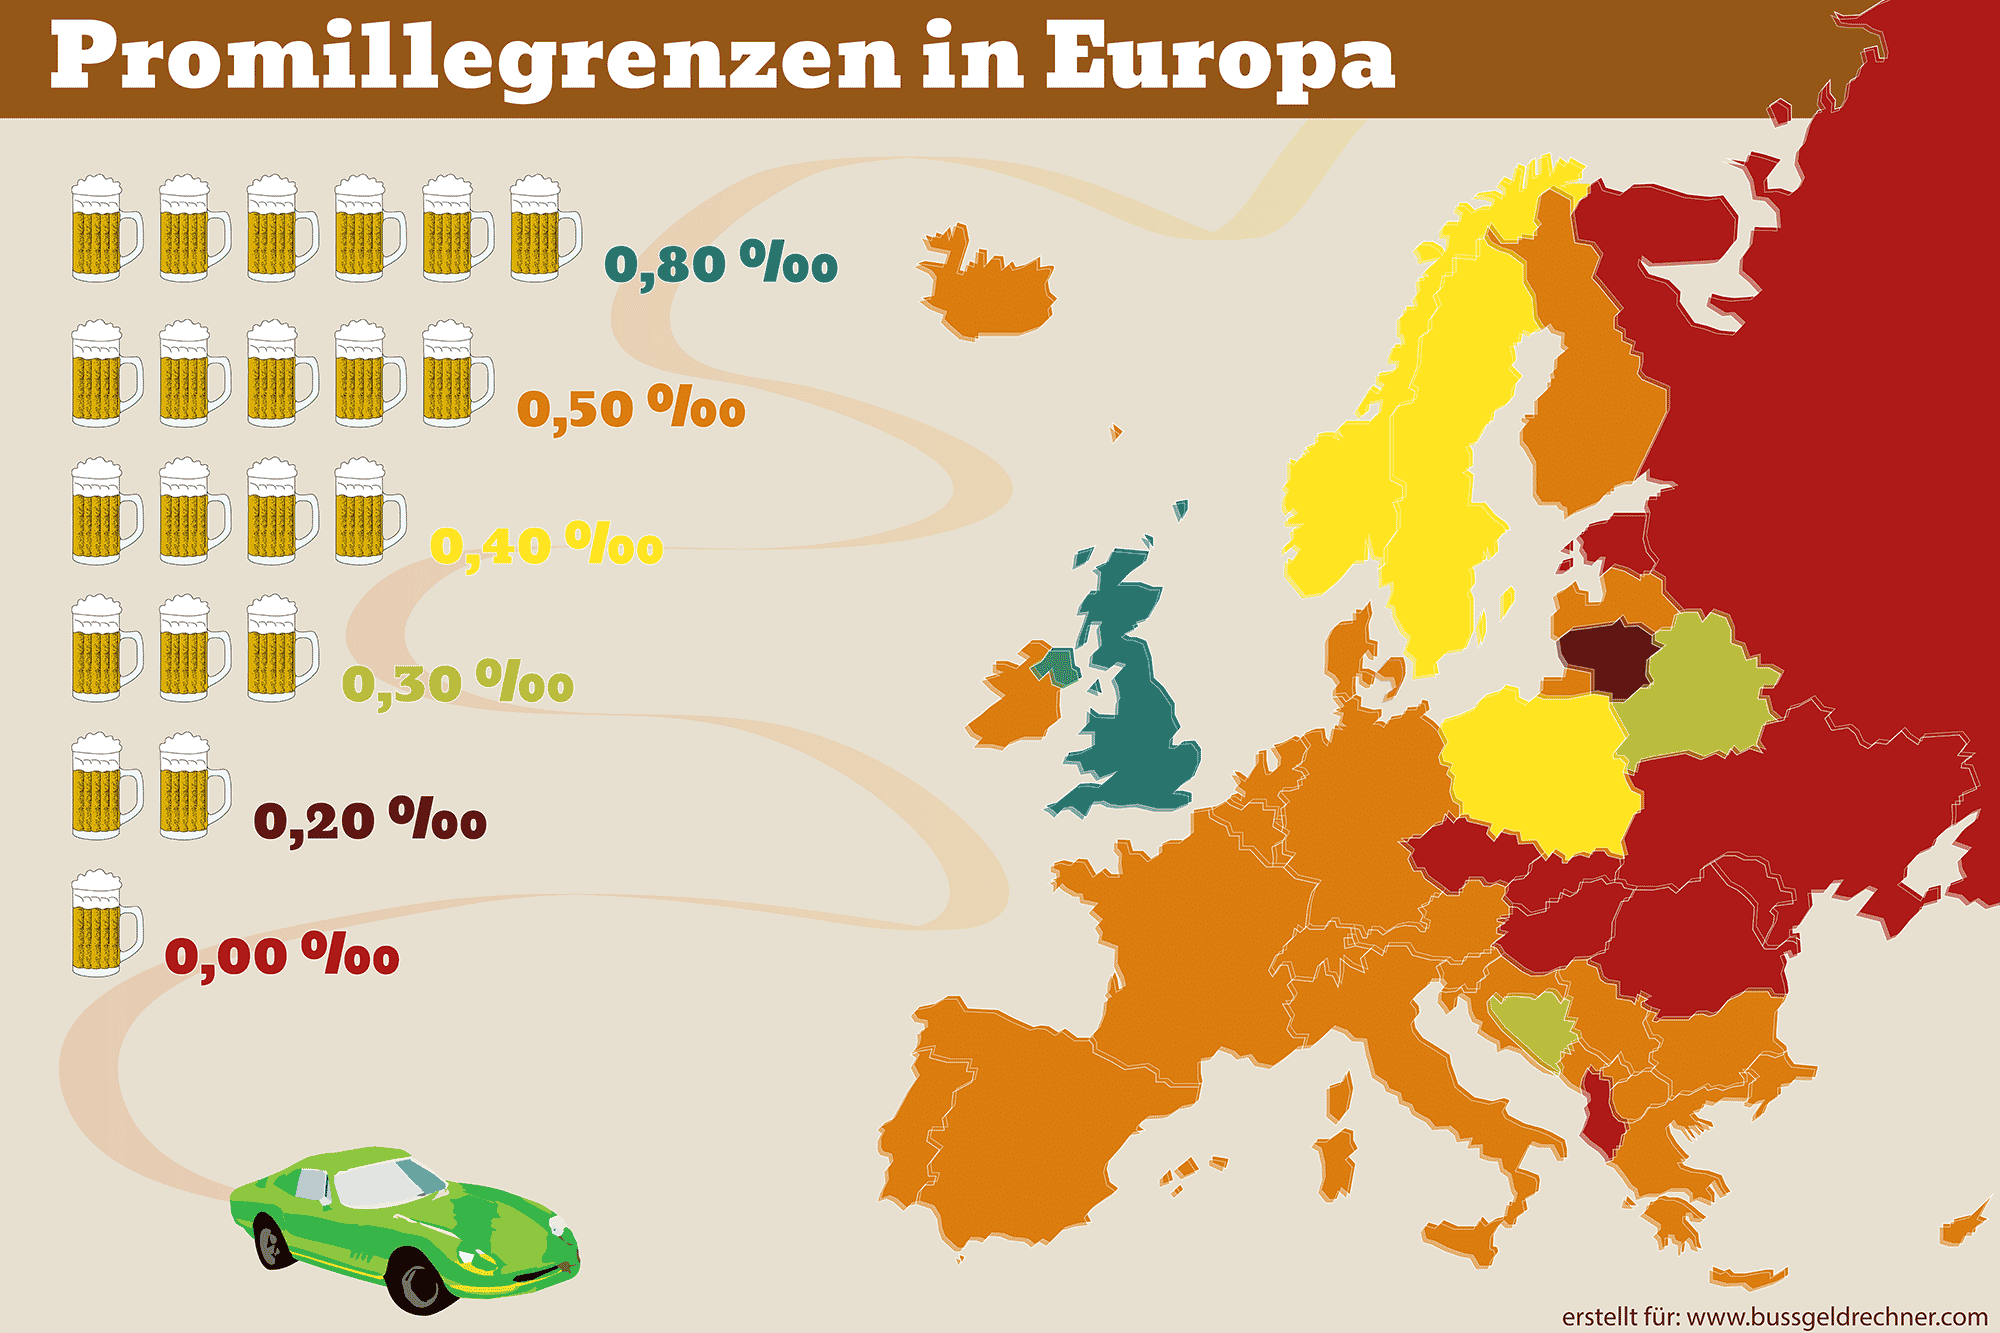 Farbliche Darstellung der Promillegrenzen in Europa.